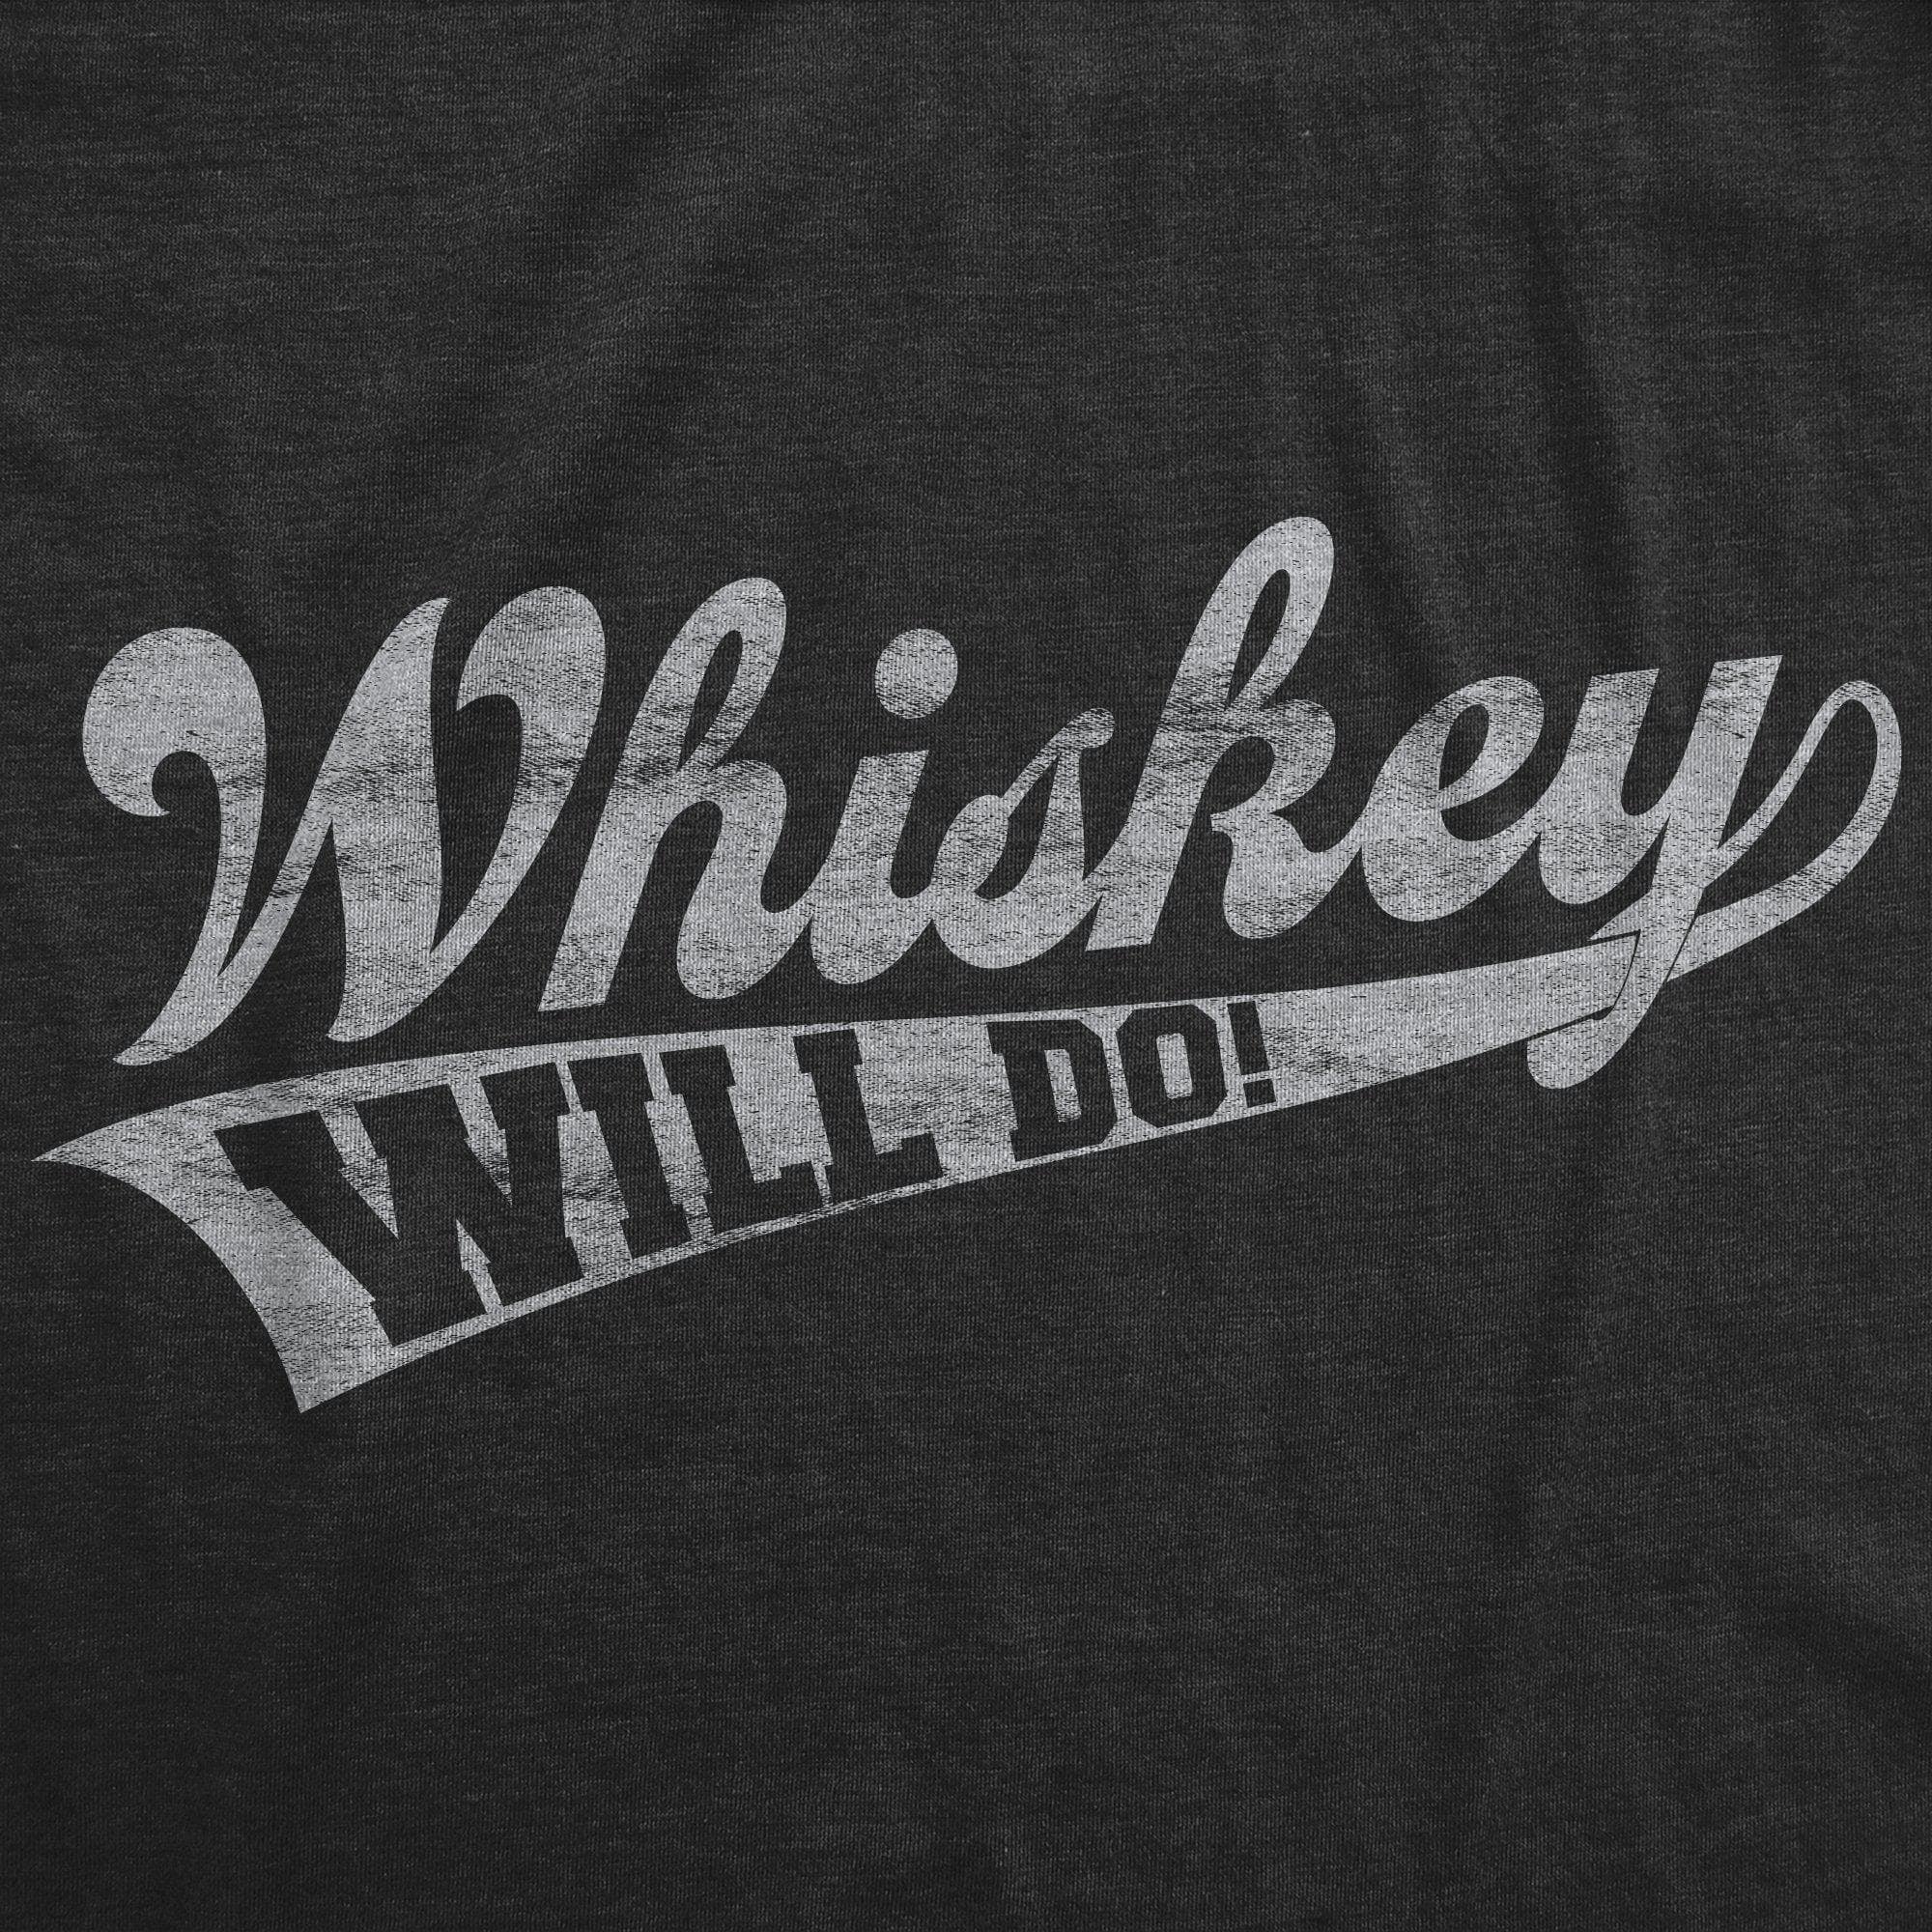 Whiskey Will Do Men's Tshirt  -  Crazy Dog T-Shirts